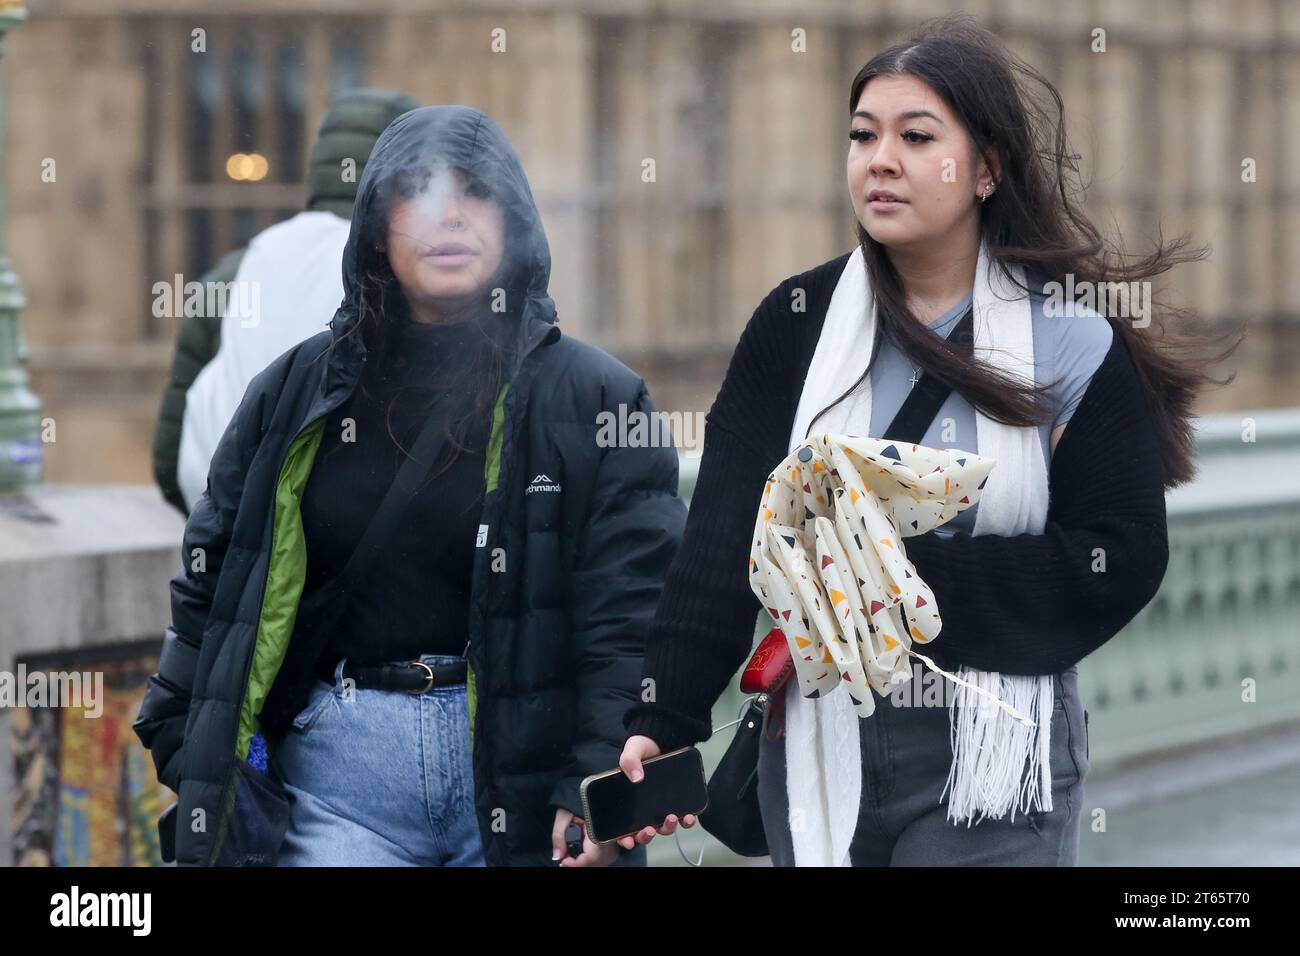 Eine junge Frau, die im Zentrum Londons Vape raucht. Nach Plänen, die in der Rede des Königs enthüllt wurden, könnten Vapes besteuert werden, um die Preise in die Höhe zu treiben und sie für Jugendliche weniger attraktiv zu machen. Stockfoto